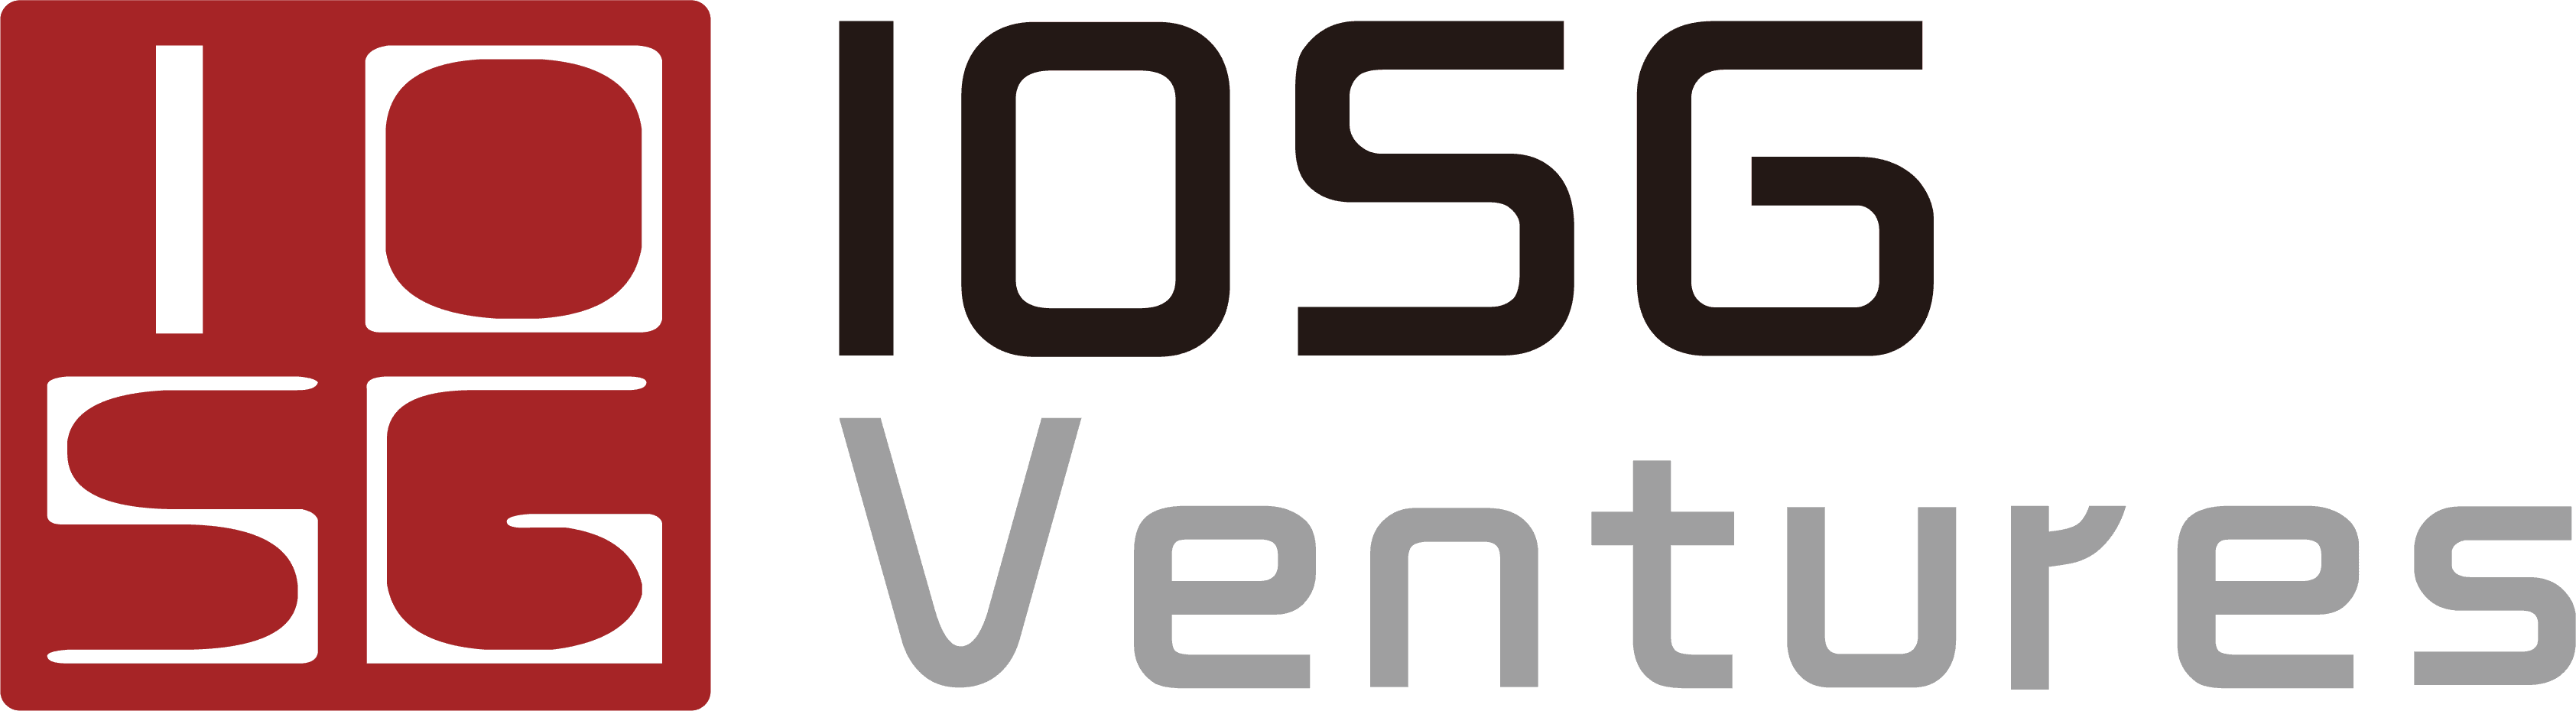 Iosg Ventures